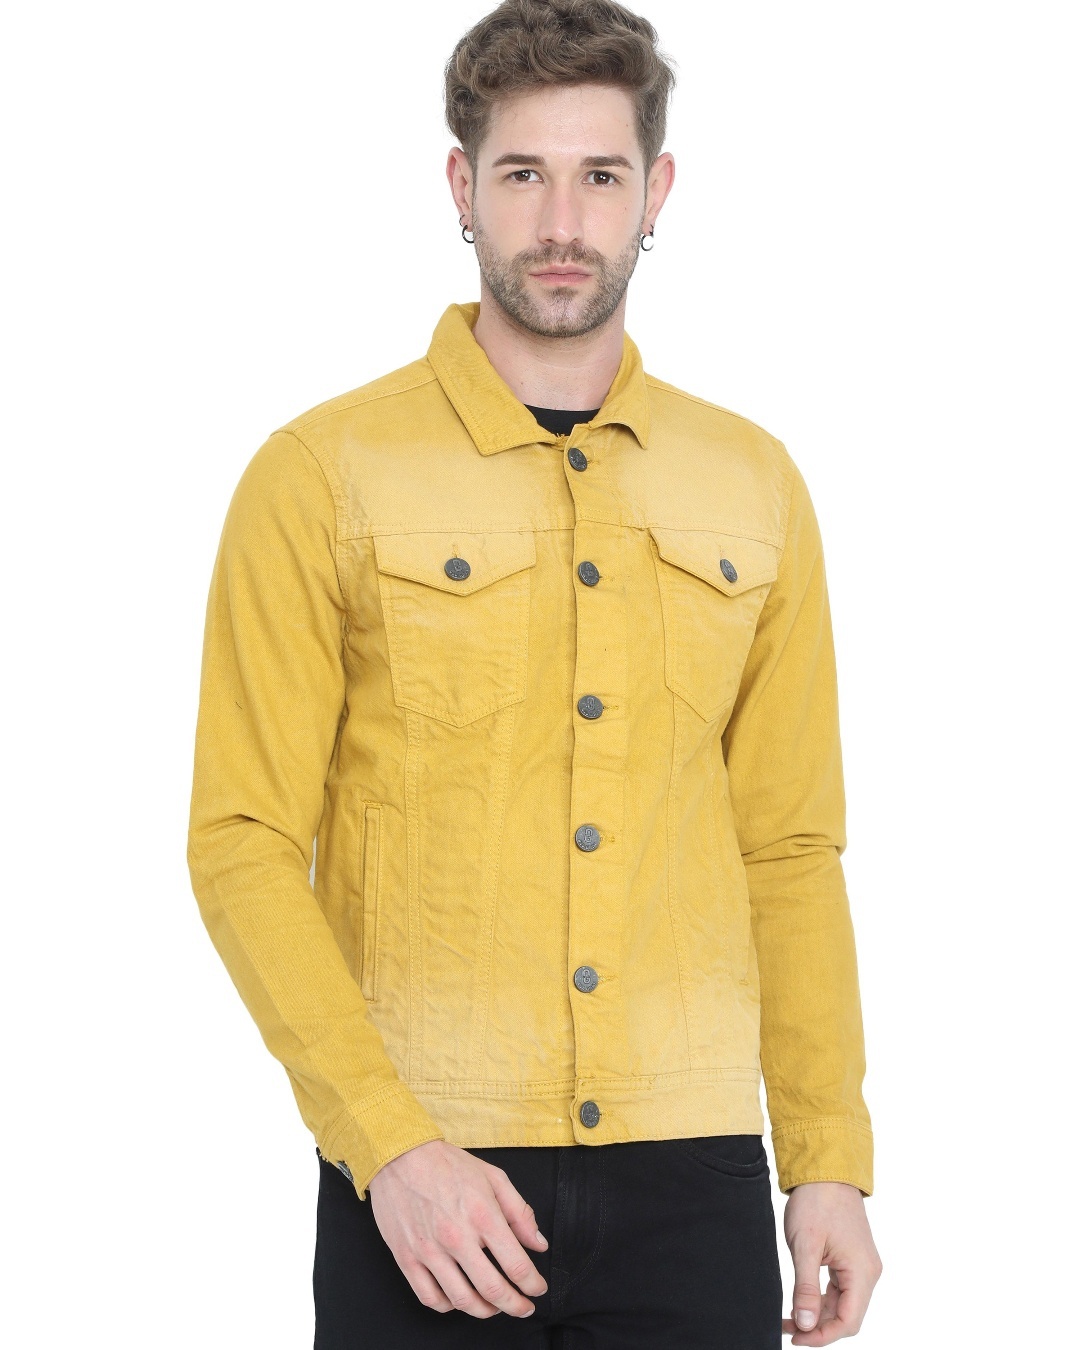 Buy Men's Mustard Yellow Solid Denim Jacket Online at Bewakoof